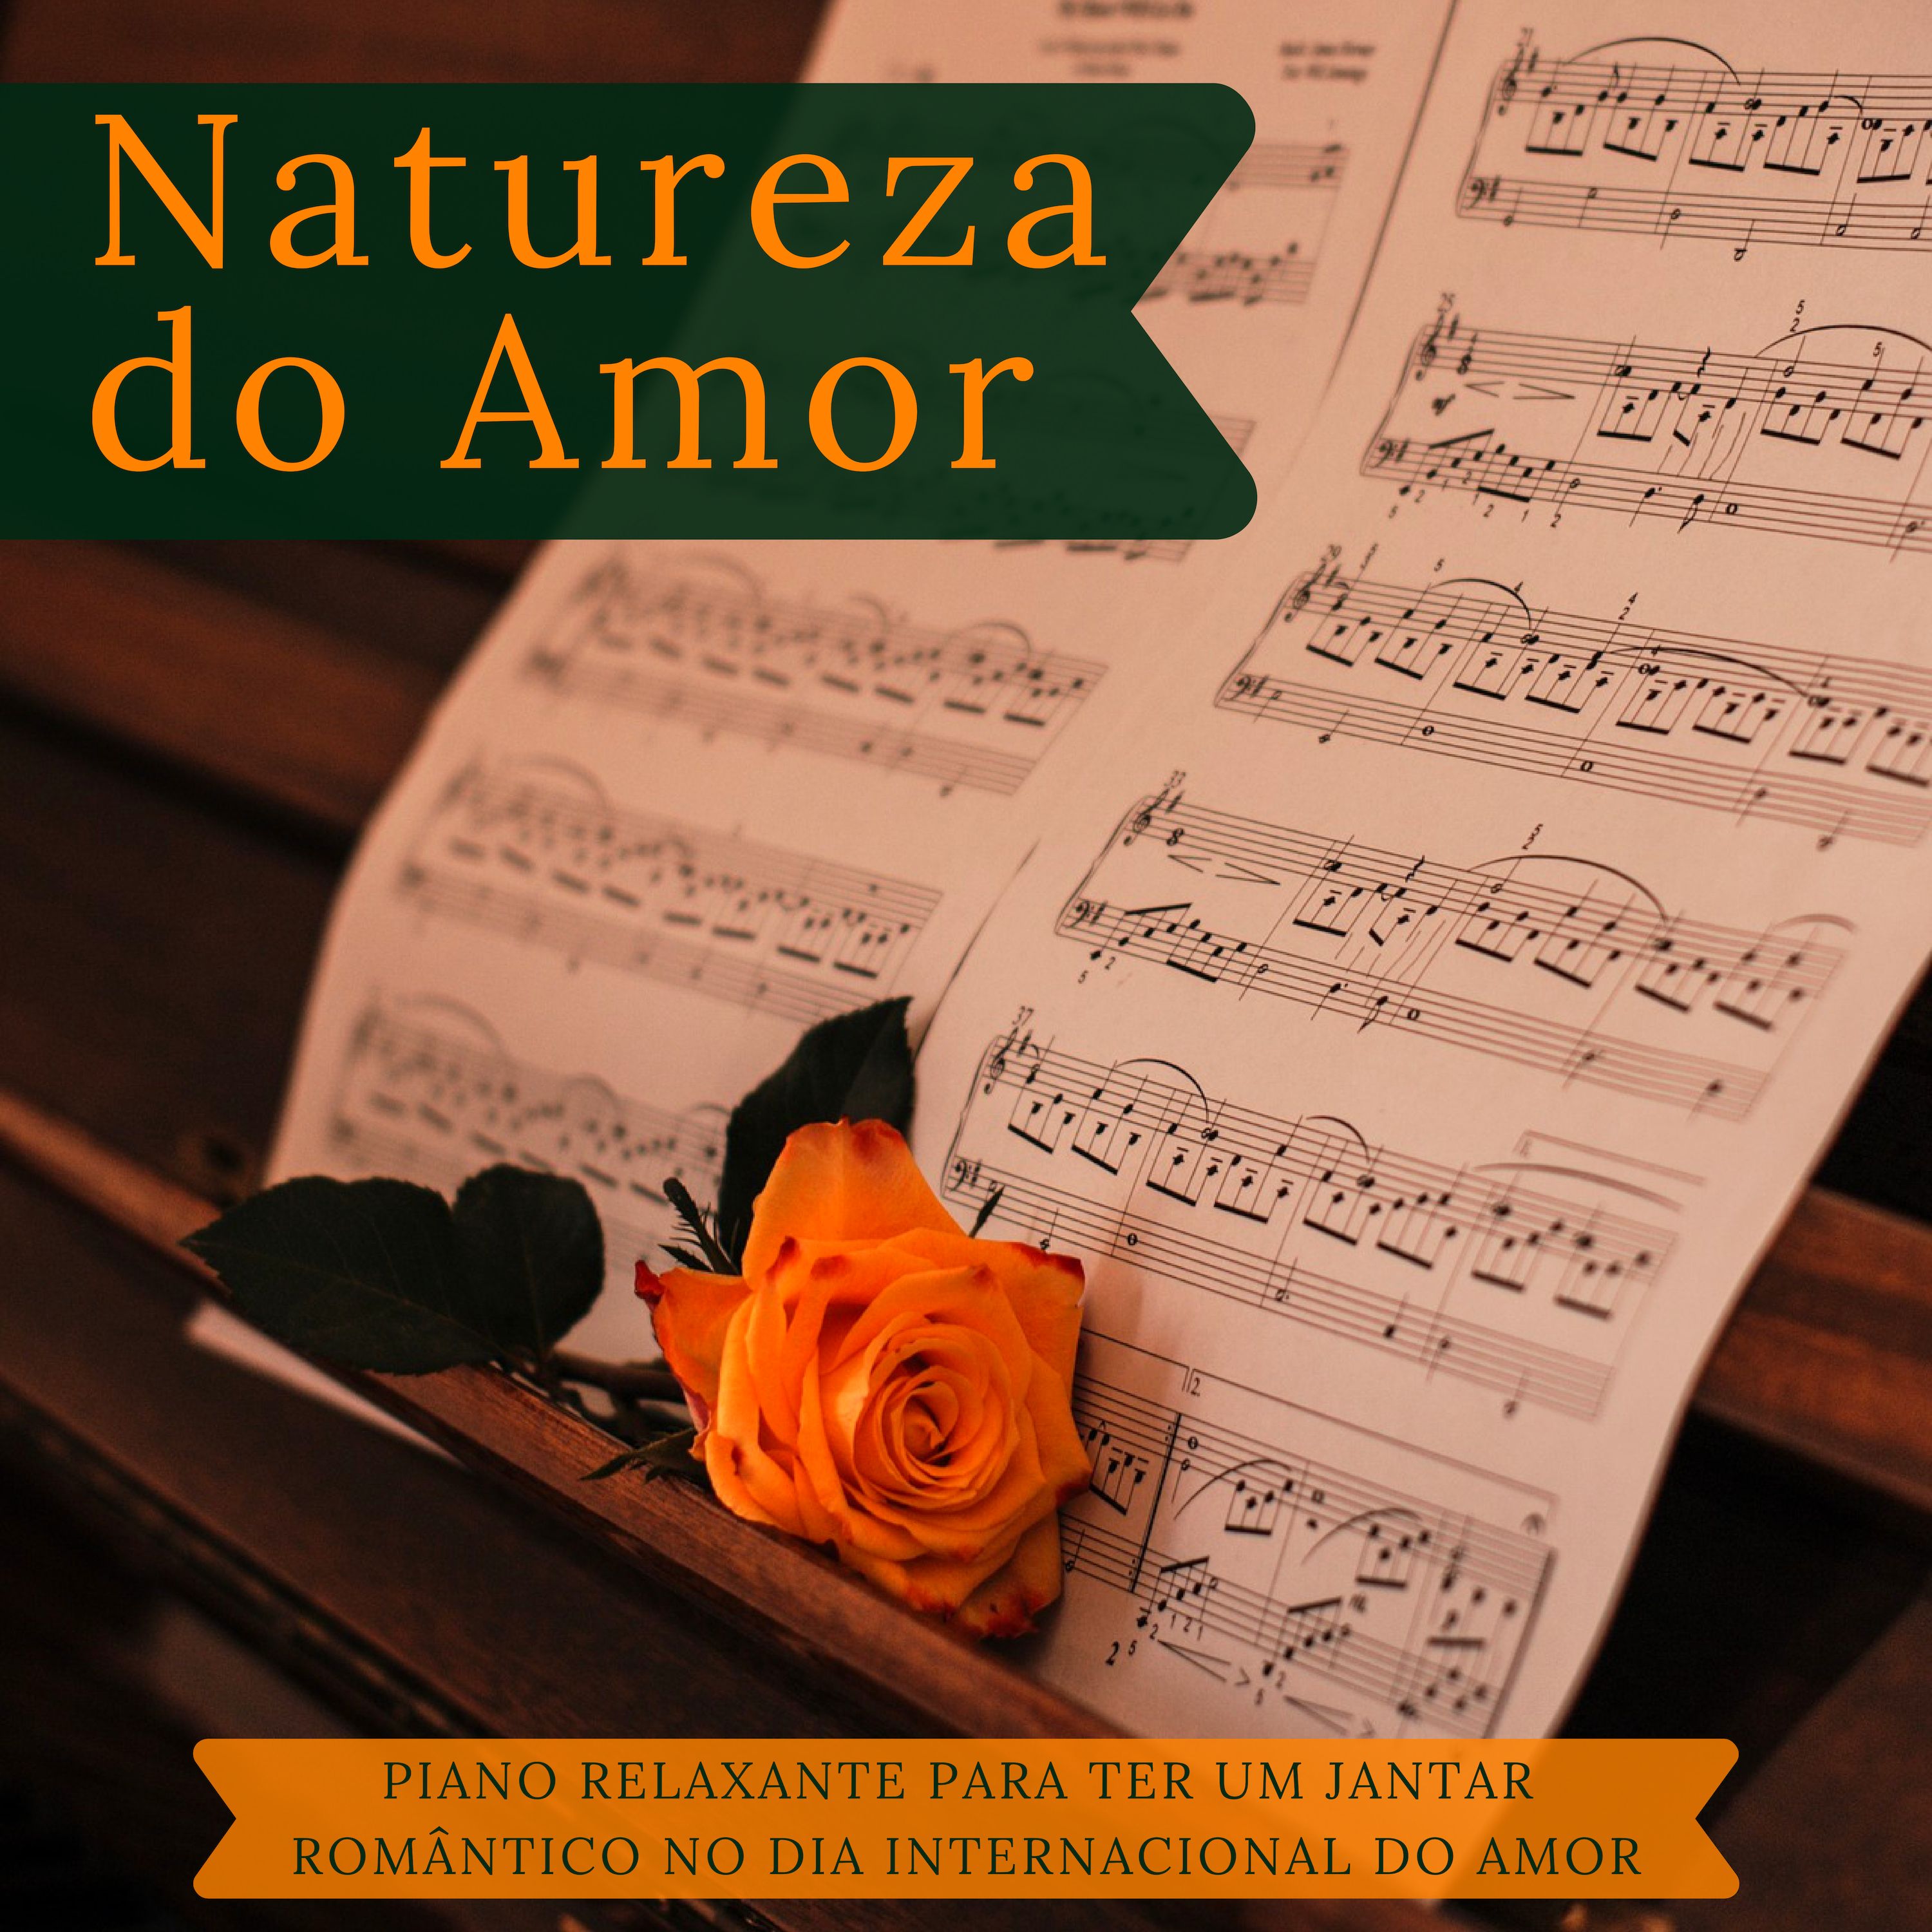 Natureza do Amor - Som Inesquecível para o Dia de São Valentim, Piano Relaxante para Ter um Jantar Romântico no Dia Internacional do Amor